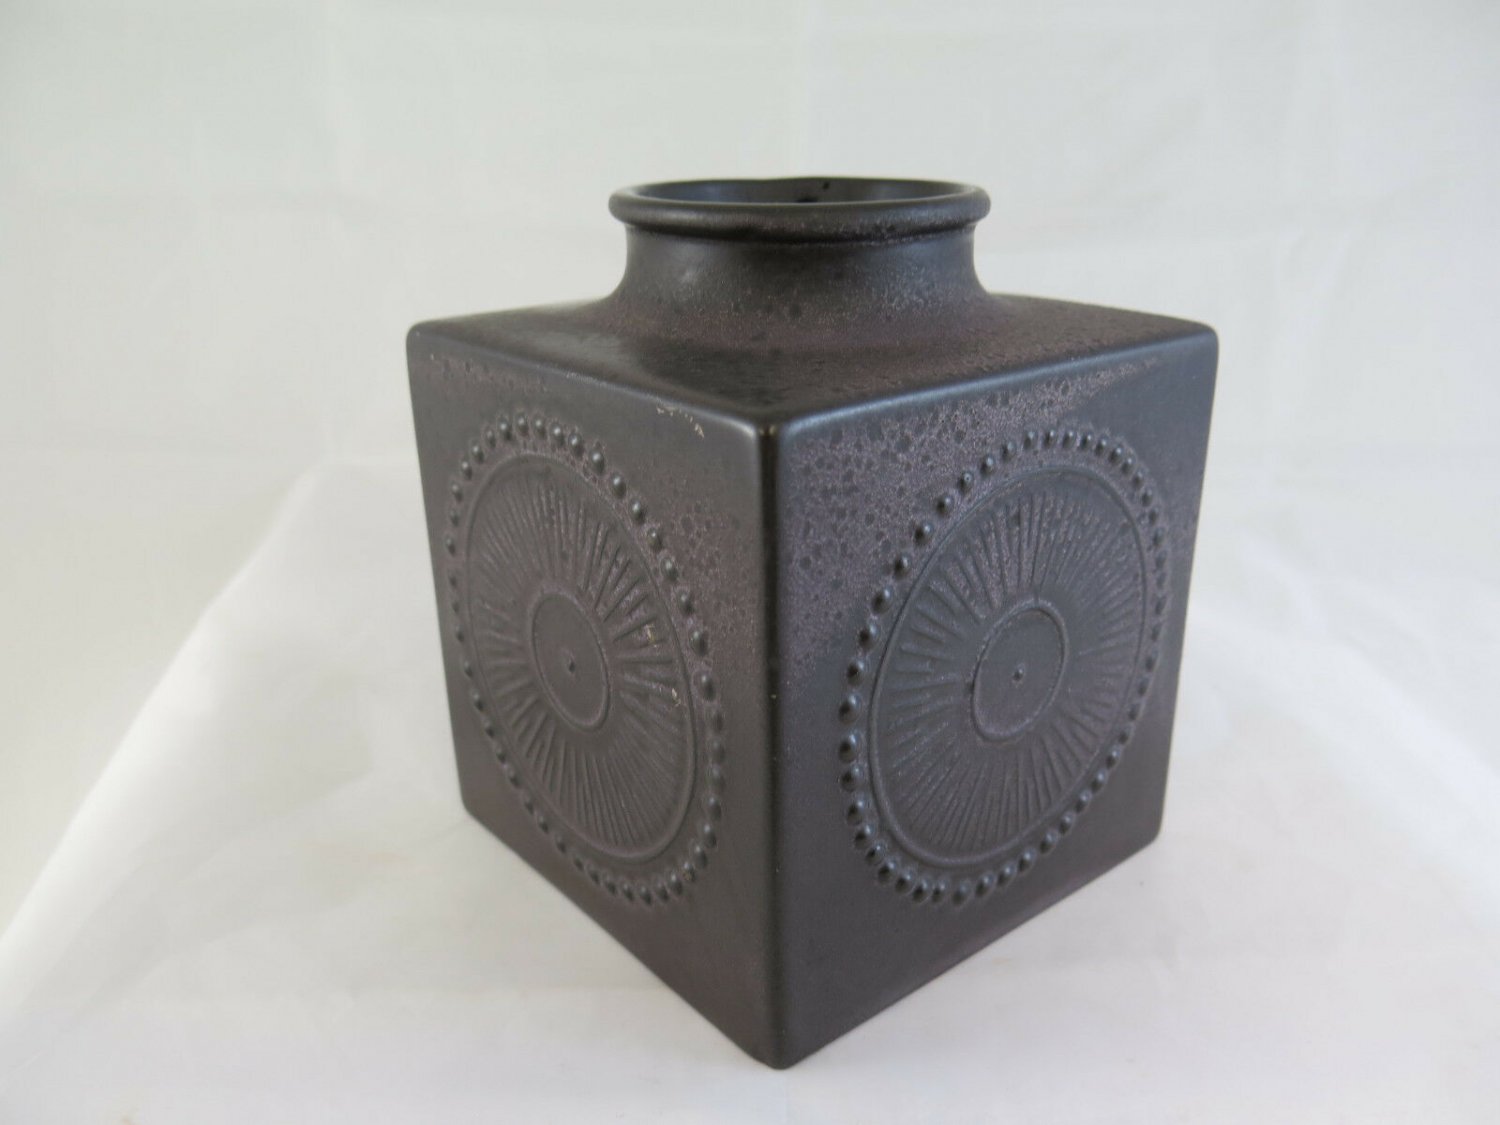 Vase in Ceramic Collectibles Ekeby Uppsala Sweden 43130/907 Vintage R85